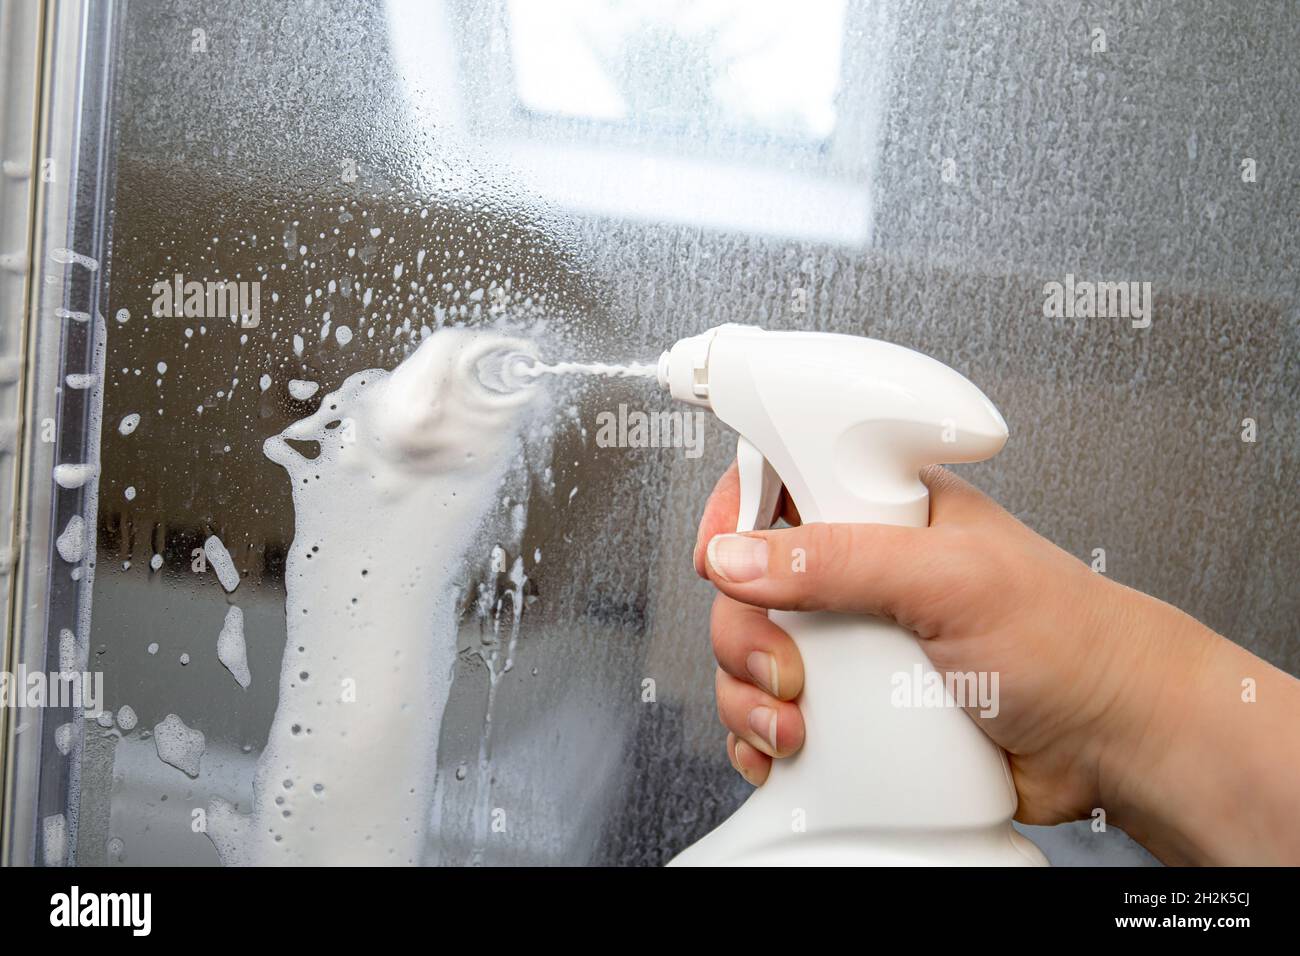 La mano della persona utilizza schiuma chimica per rimuovere le calcare. Rimozione del calcare dalla porta in vetro del box doccia. Lavori in corso. Foto Stock